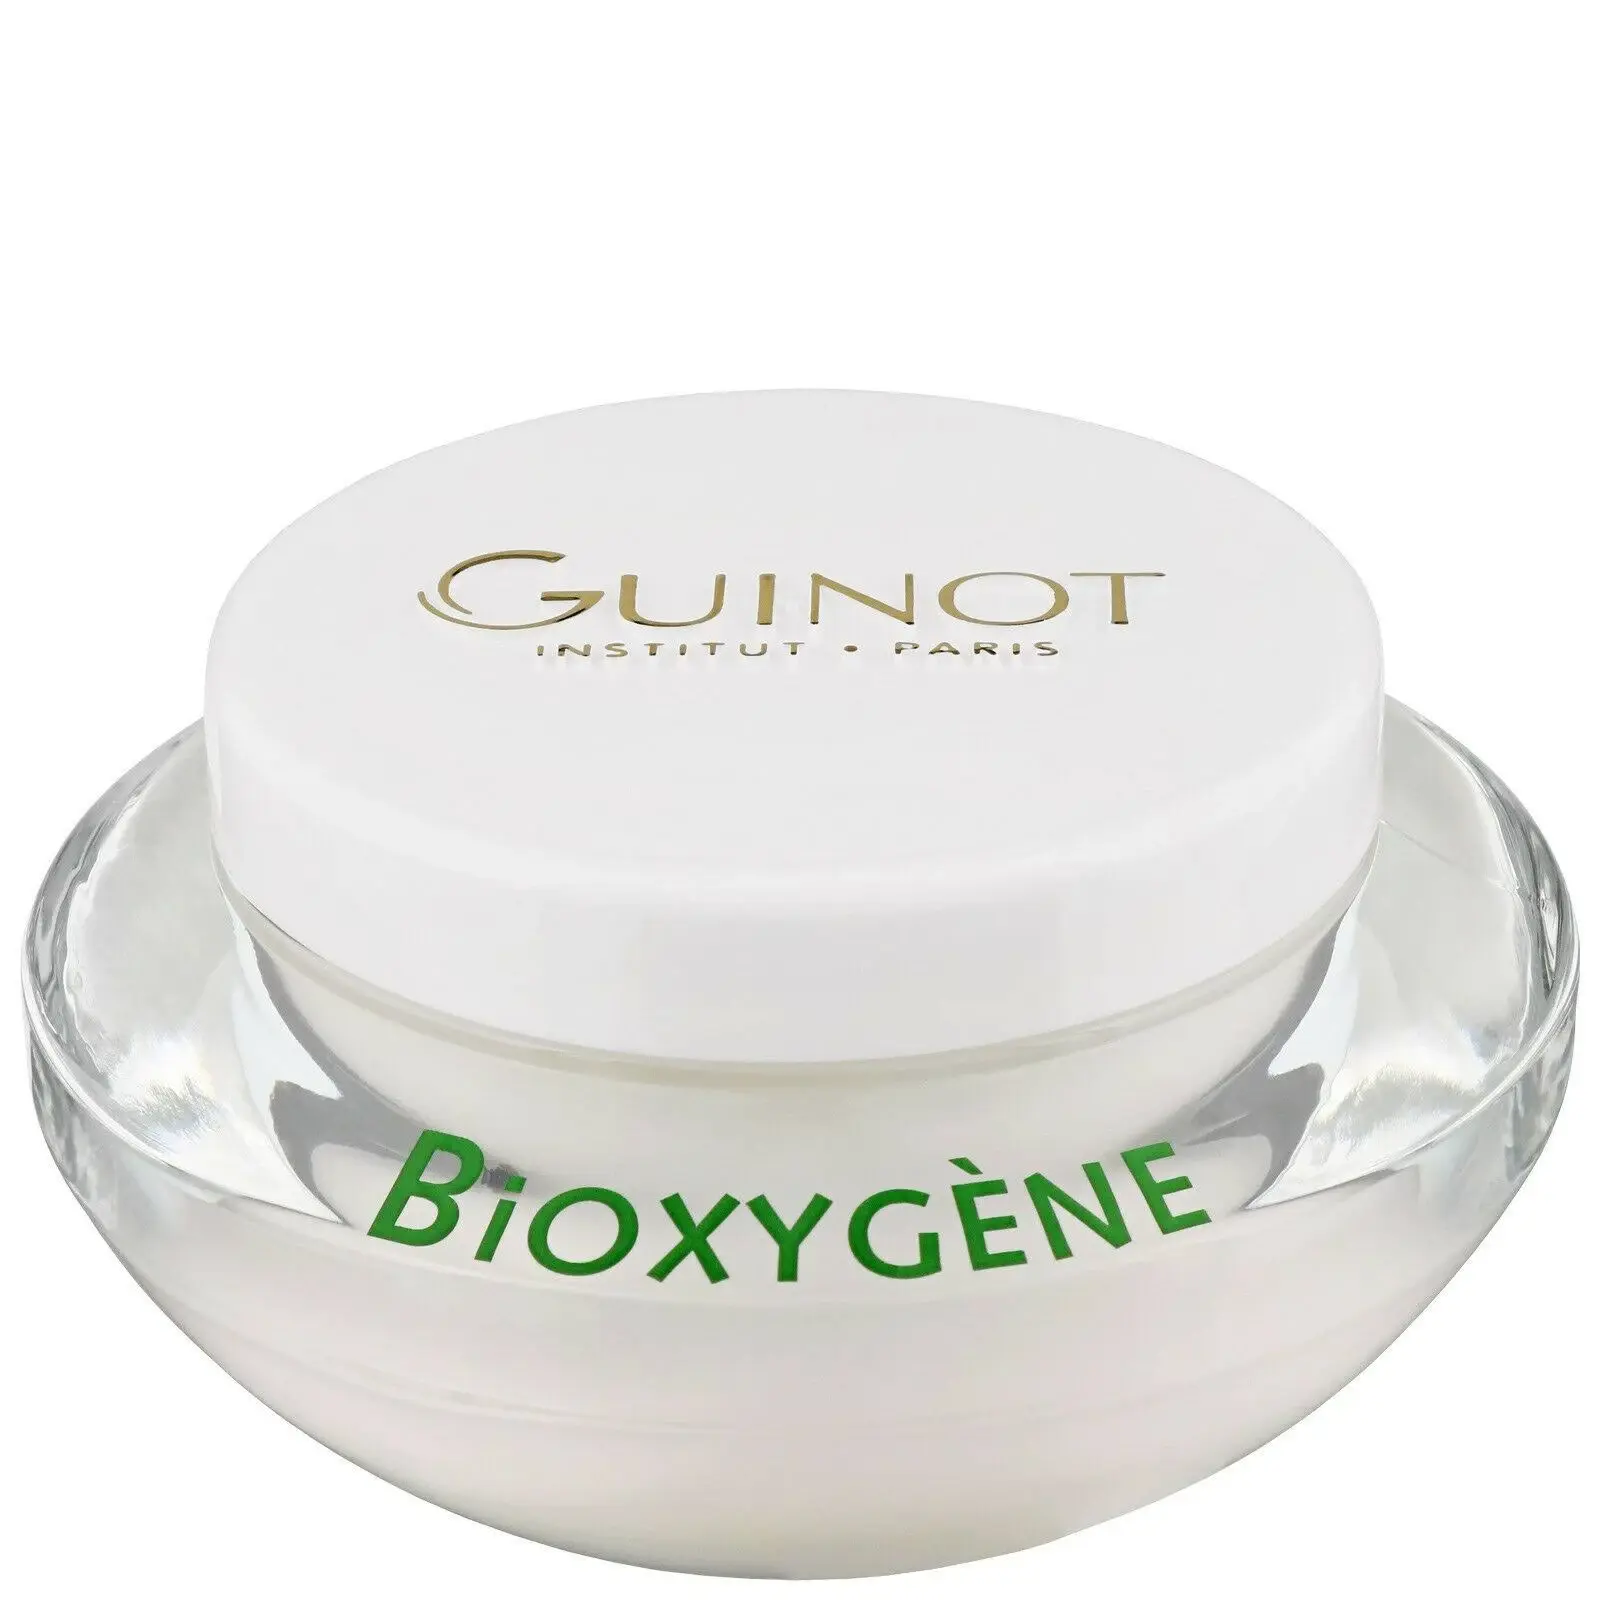 Guinot Bioxygene Gezichtscrème 50ml